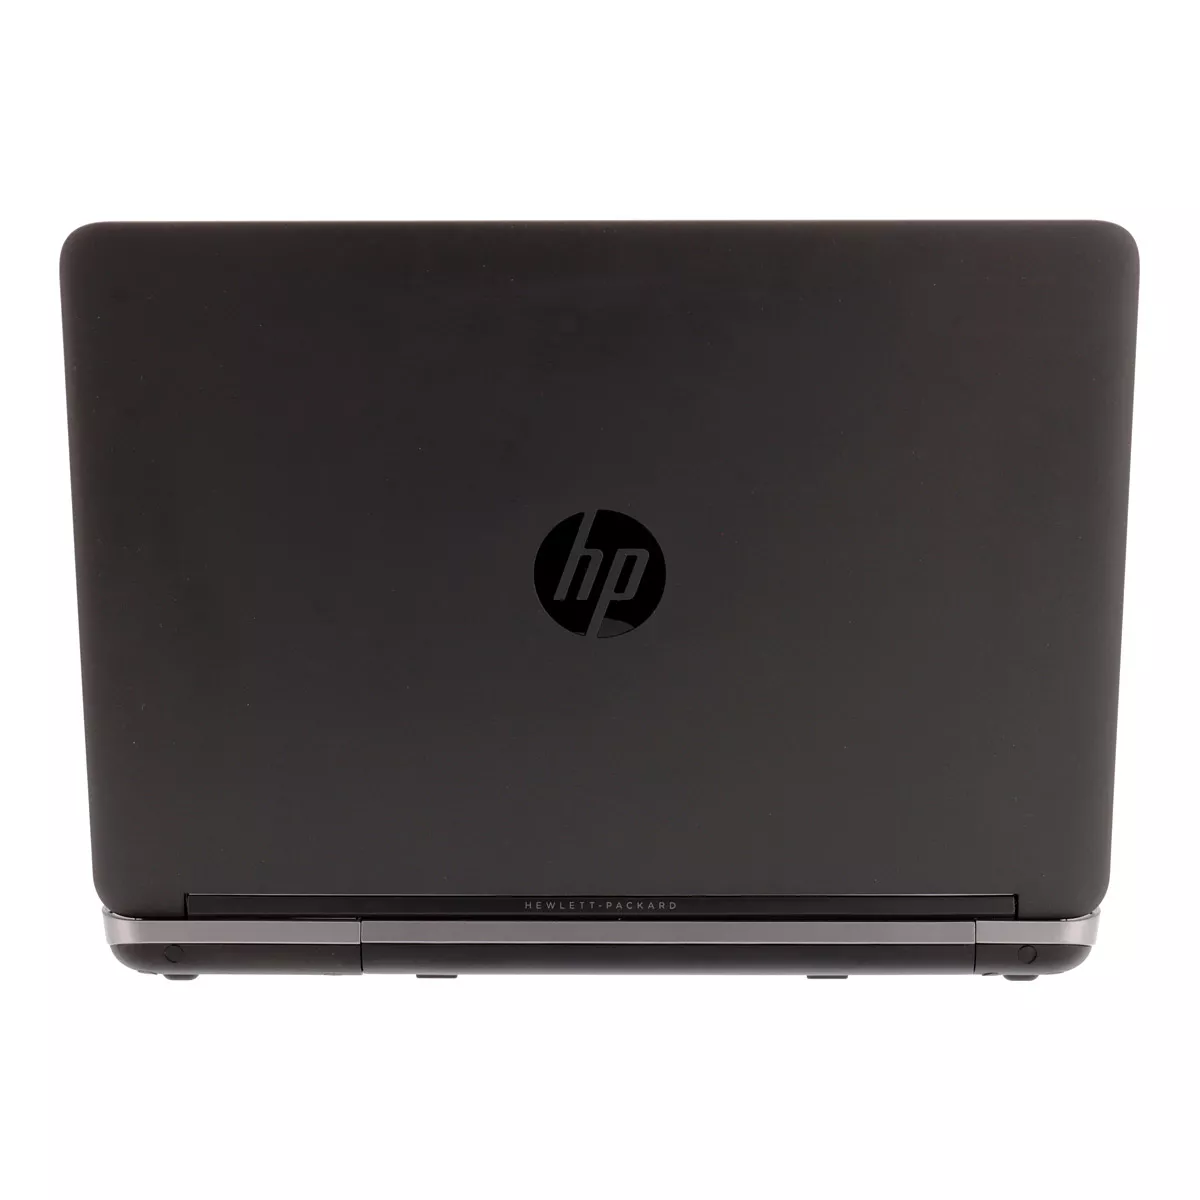 HP ProBook 640 G1 Core i5 4300M 8GB 128 GB Webcam A+